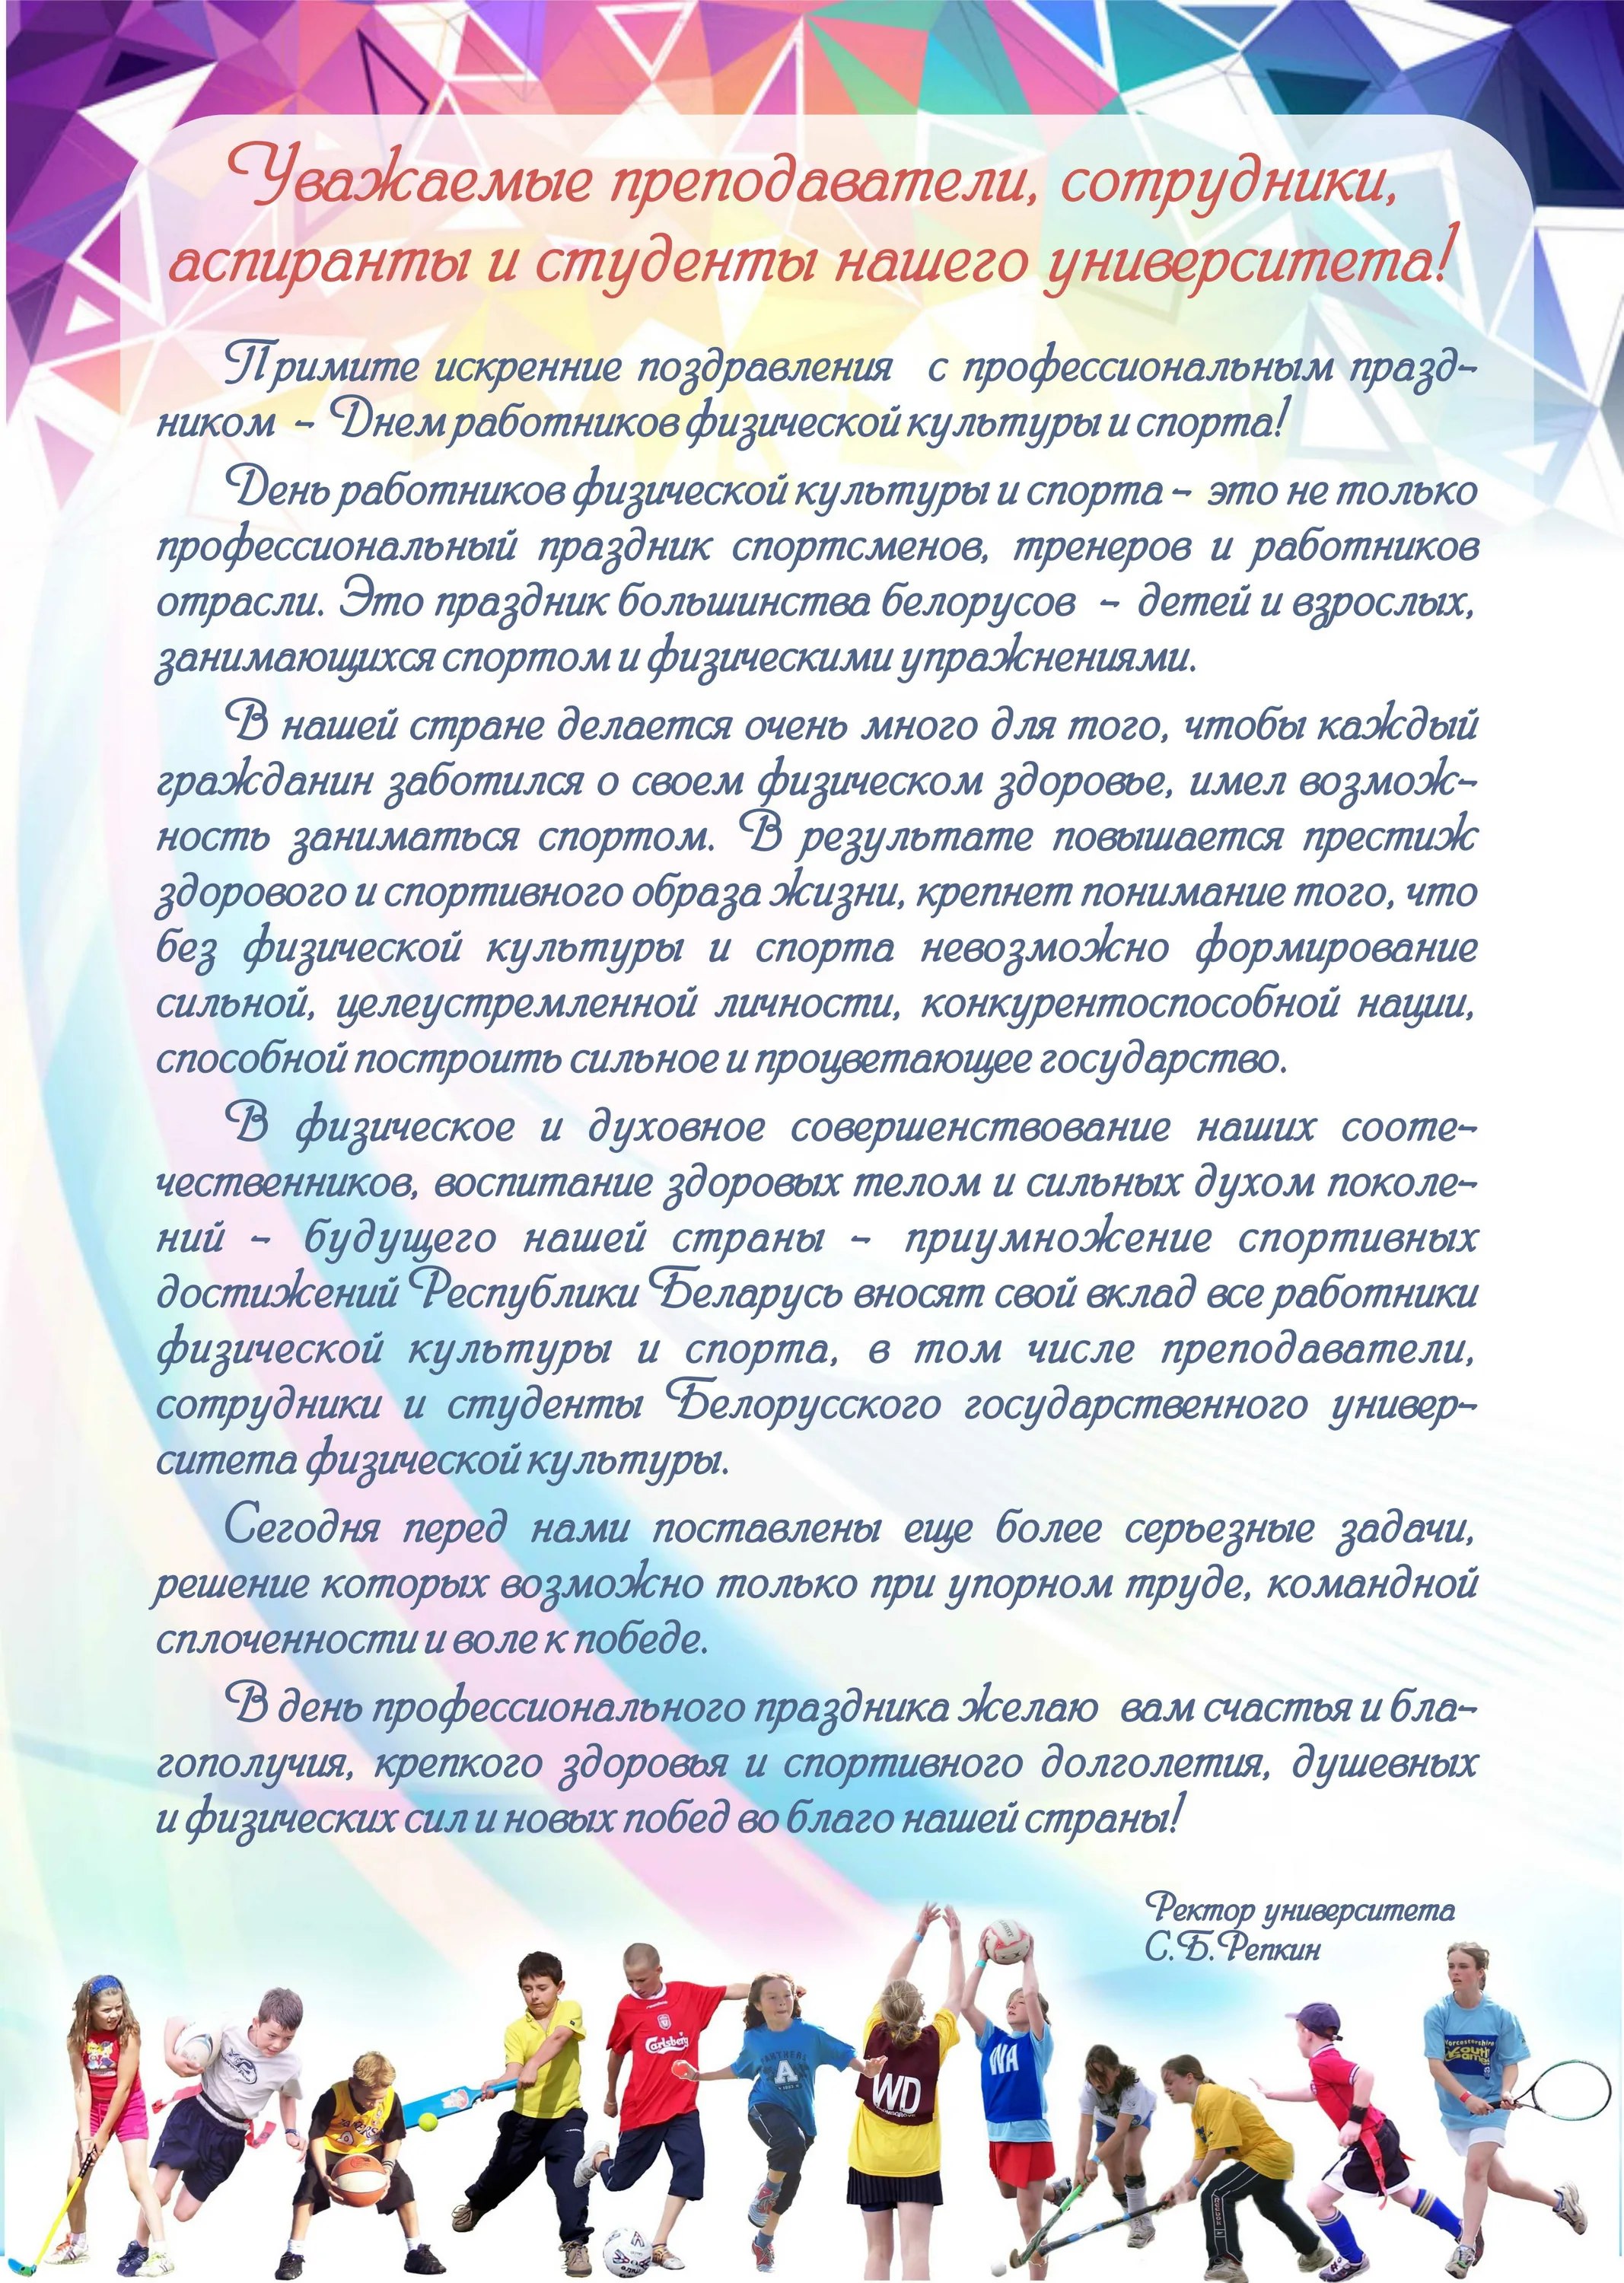 Фото День работника физической культуры и спорта Украины #38